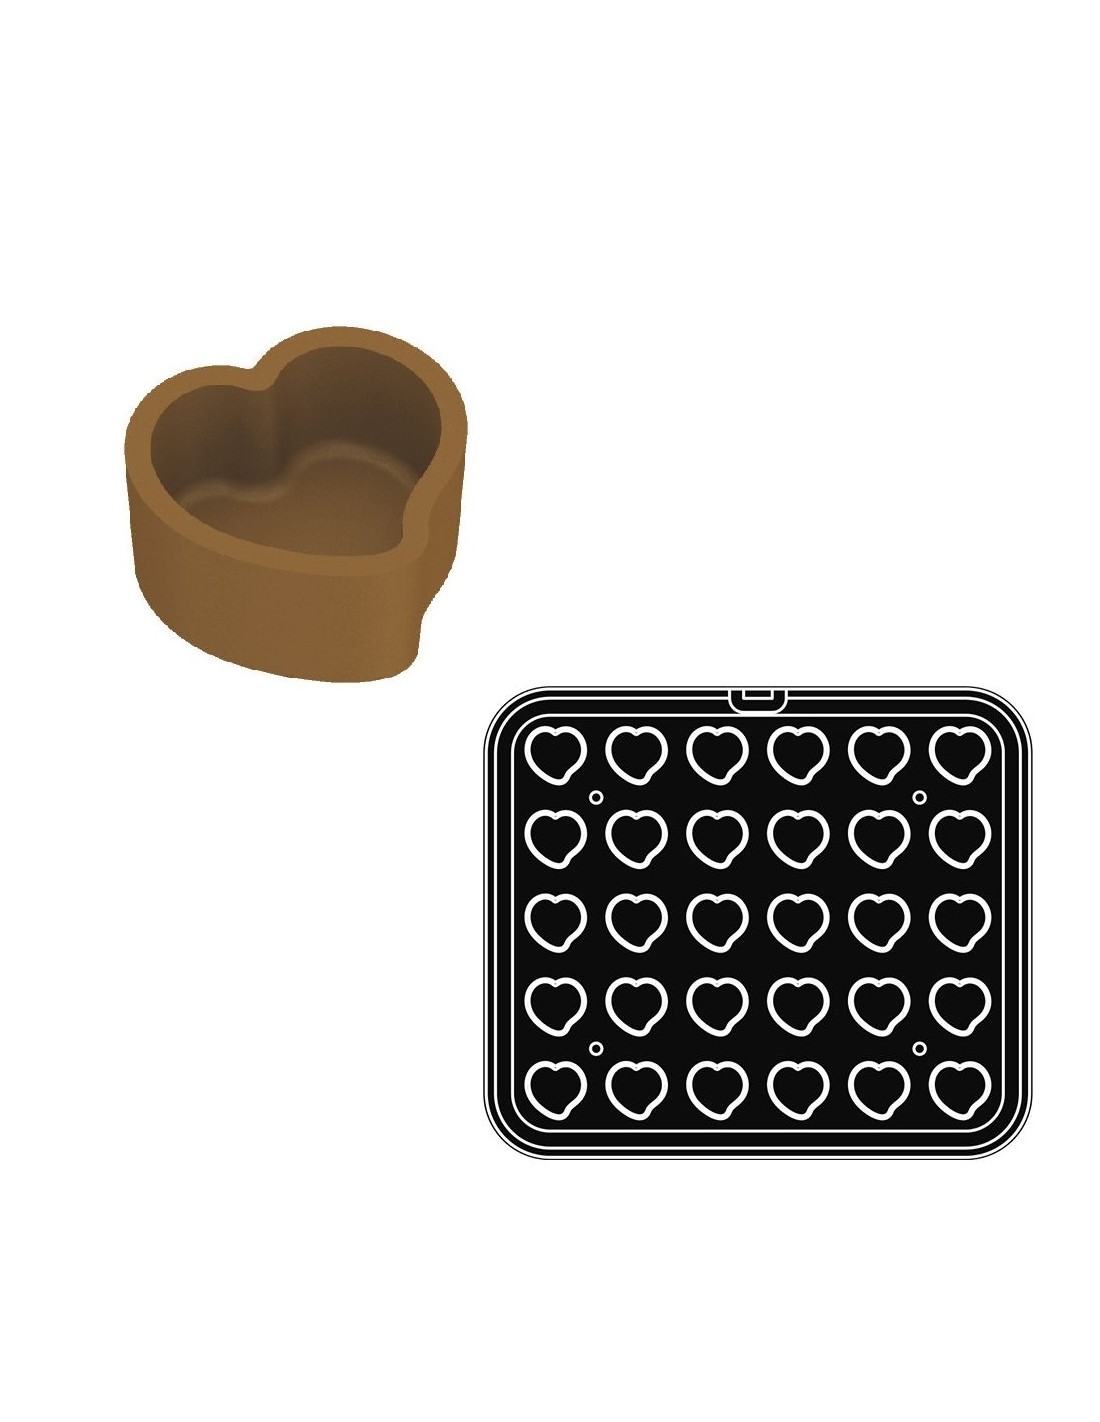 Impronte cuore 40 x 38 x 17 h mm  n°30 -   Vendibile solo con modello Cookmatic